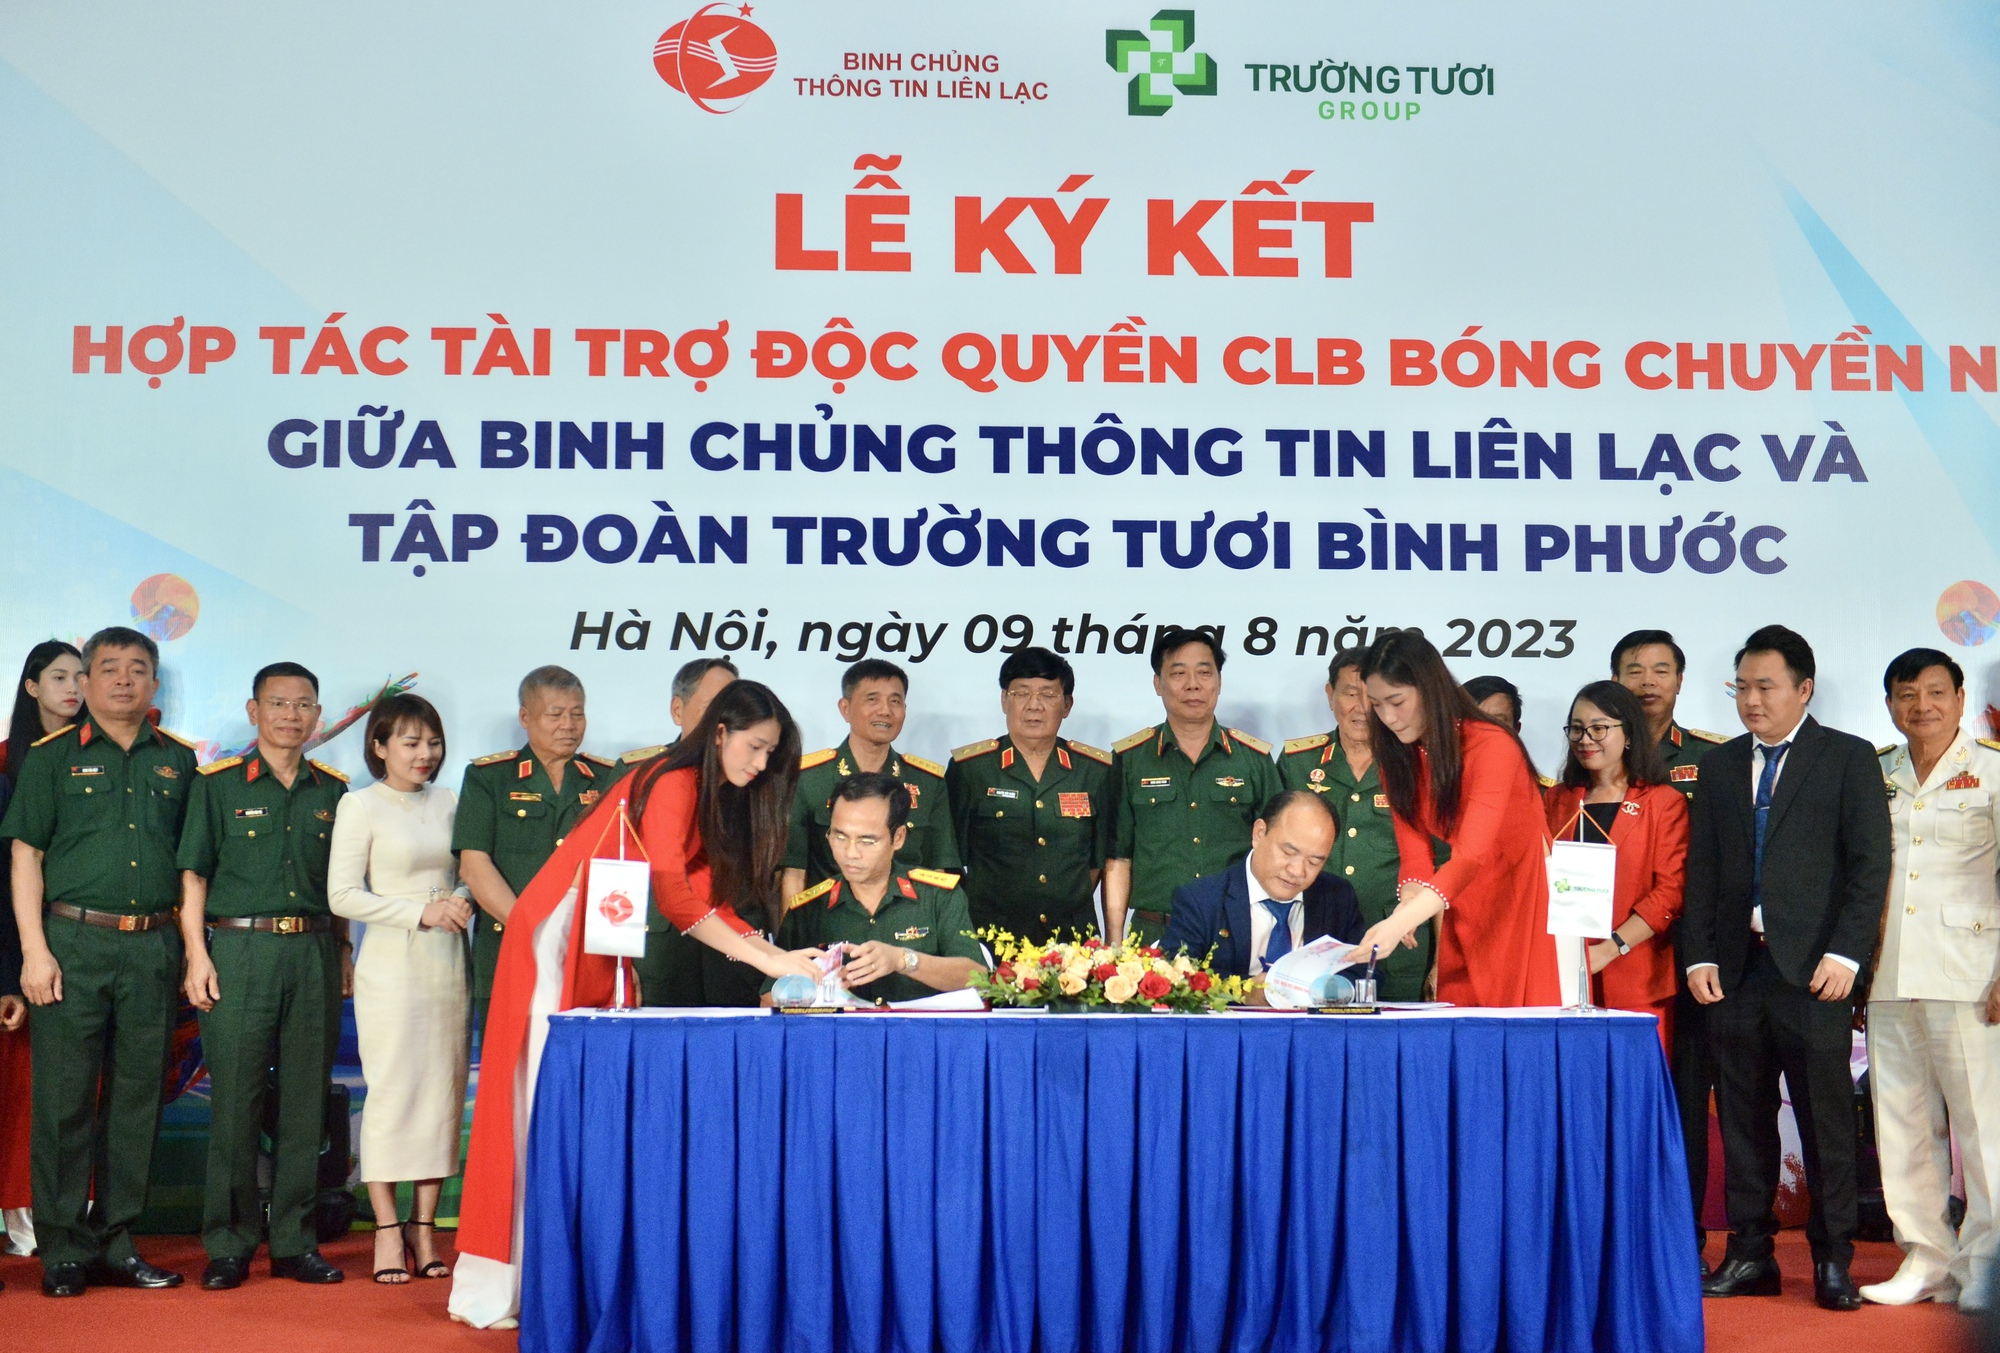 Tập đoàn Trường Tươi Bình Phước tài trợ cho CLB Bóng chuyền nữ Bộ Tư lệnh TTLL - Ảnh 4.